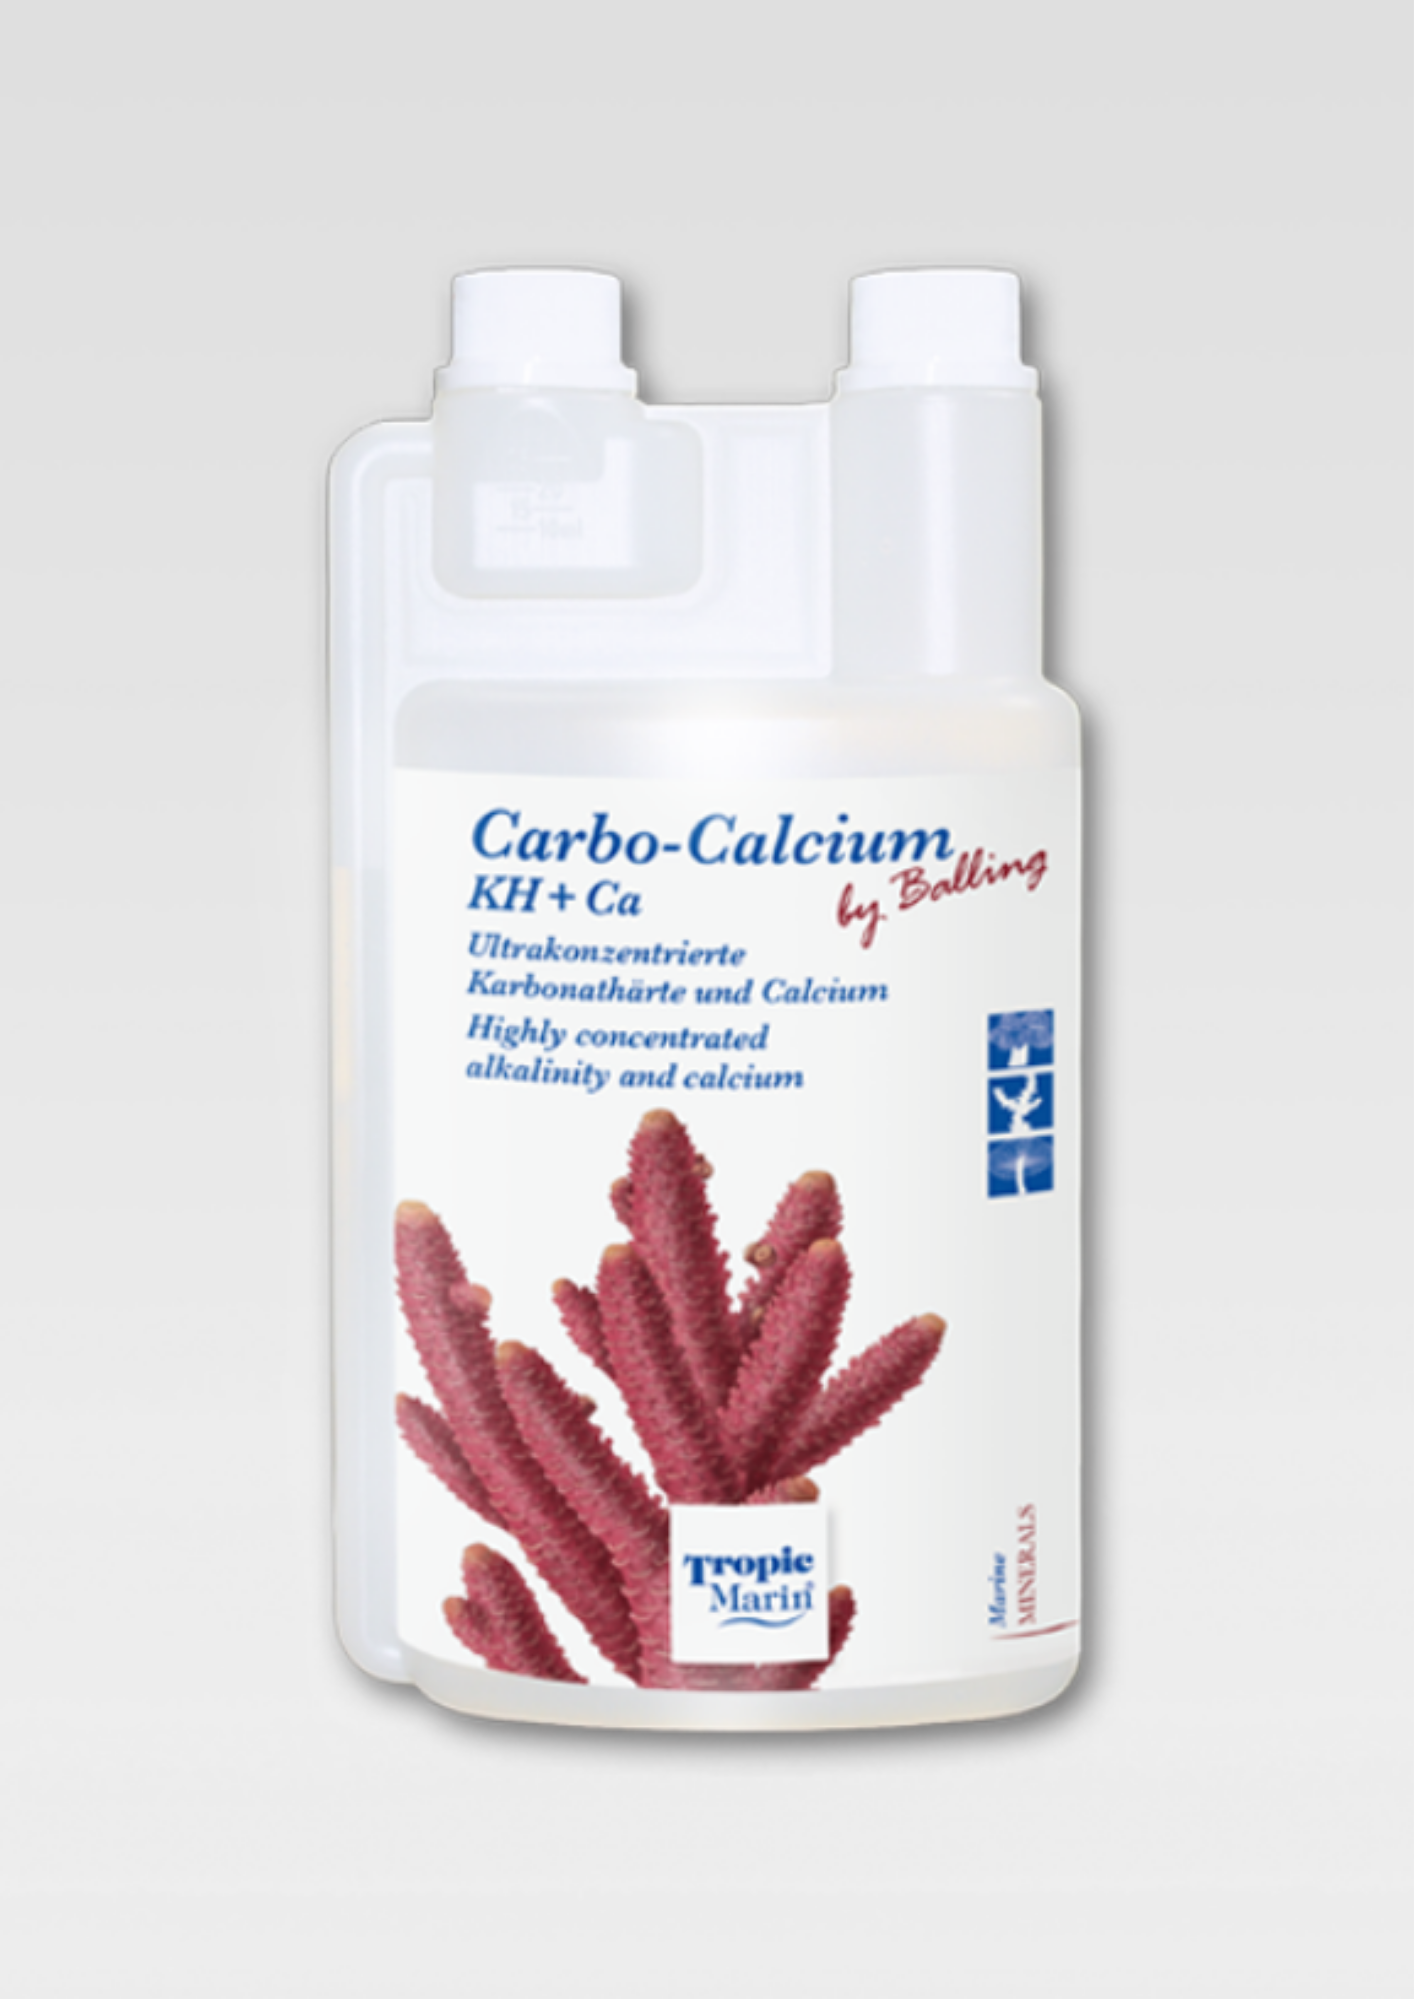 Carbo-Calcium (KH + Ca)